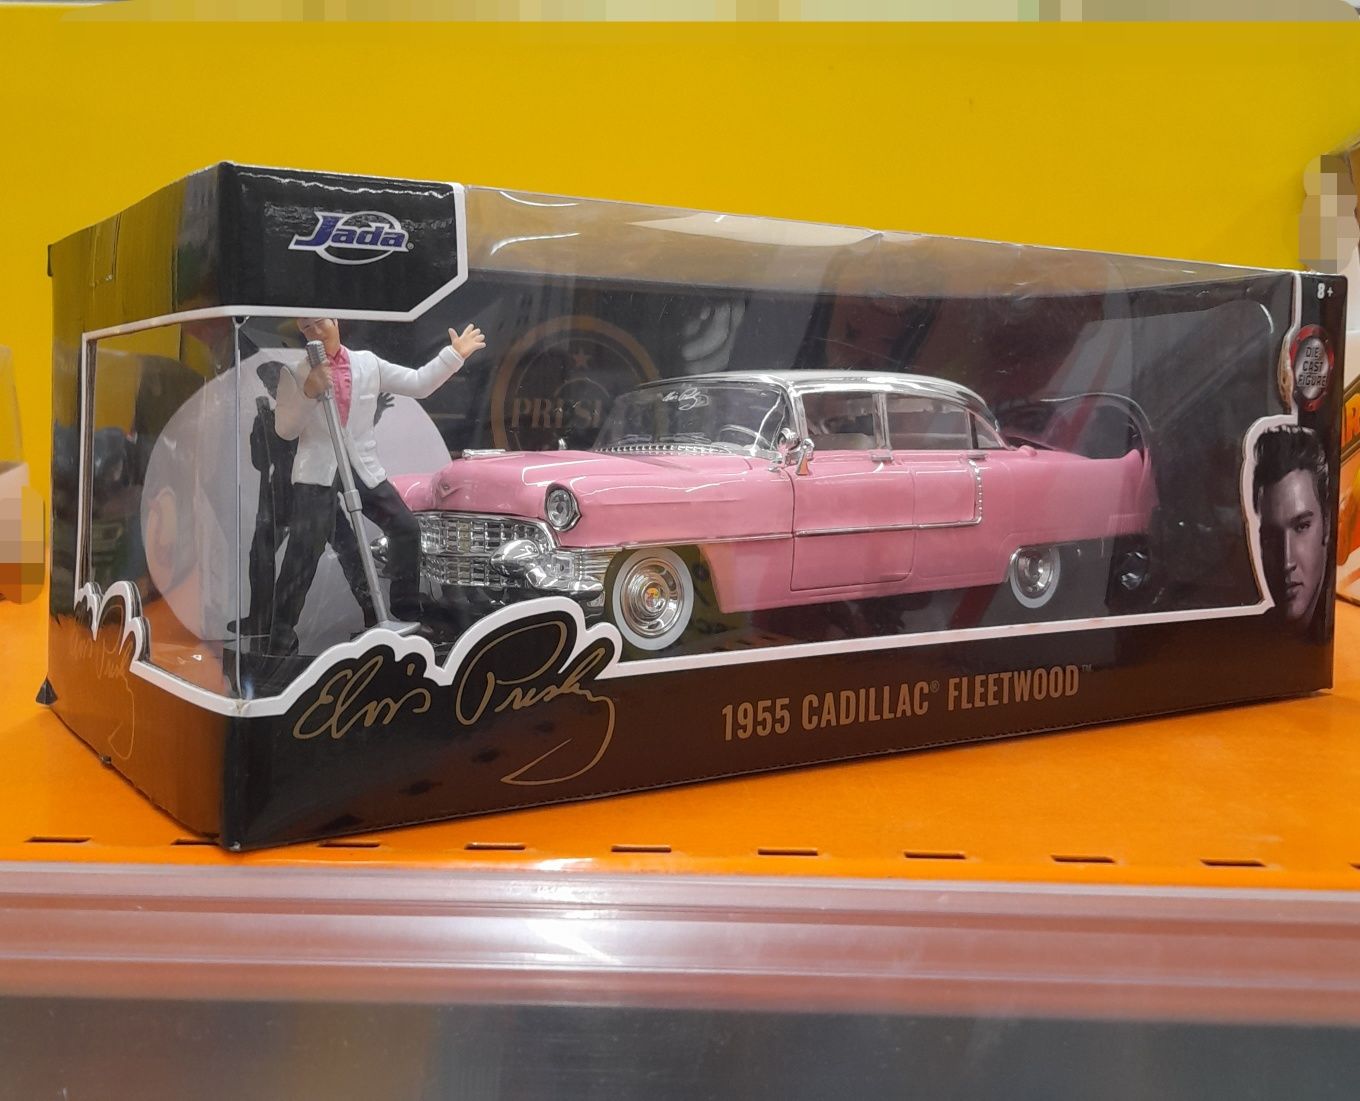 Cadillac Fleetwood 1955 Elvis Presley